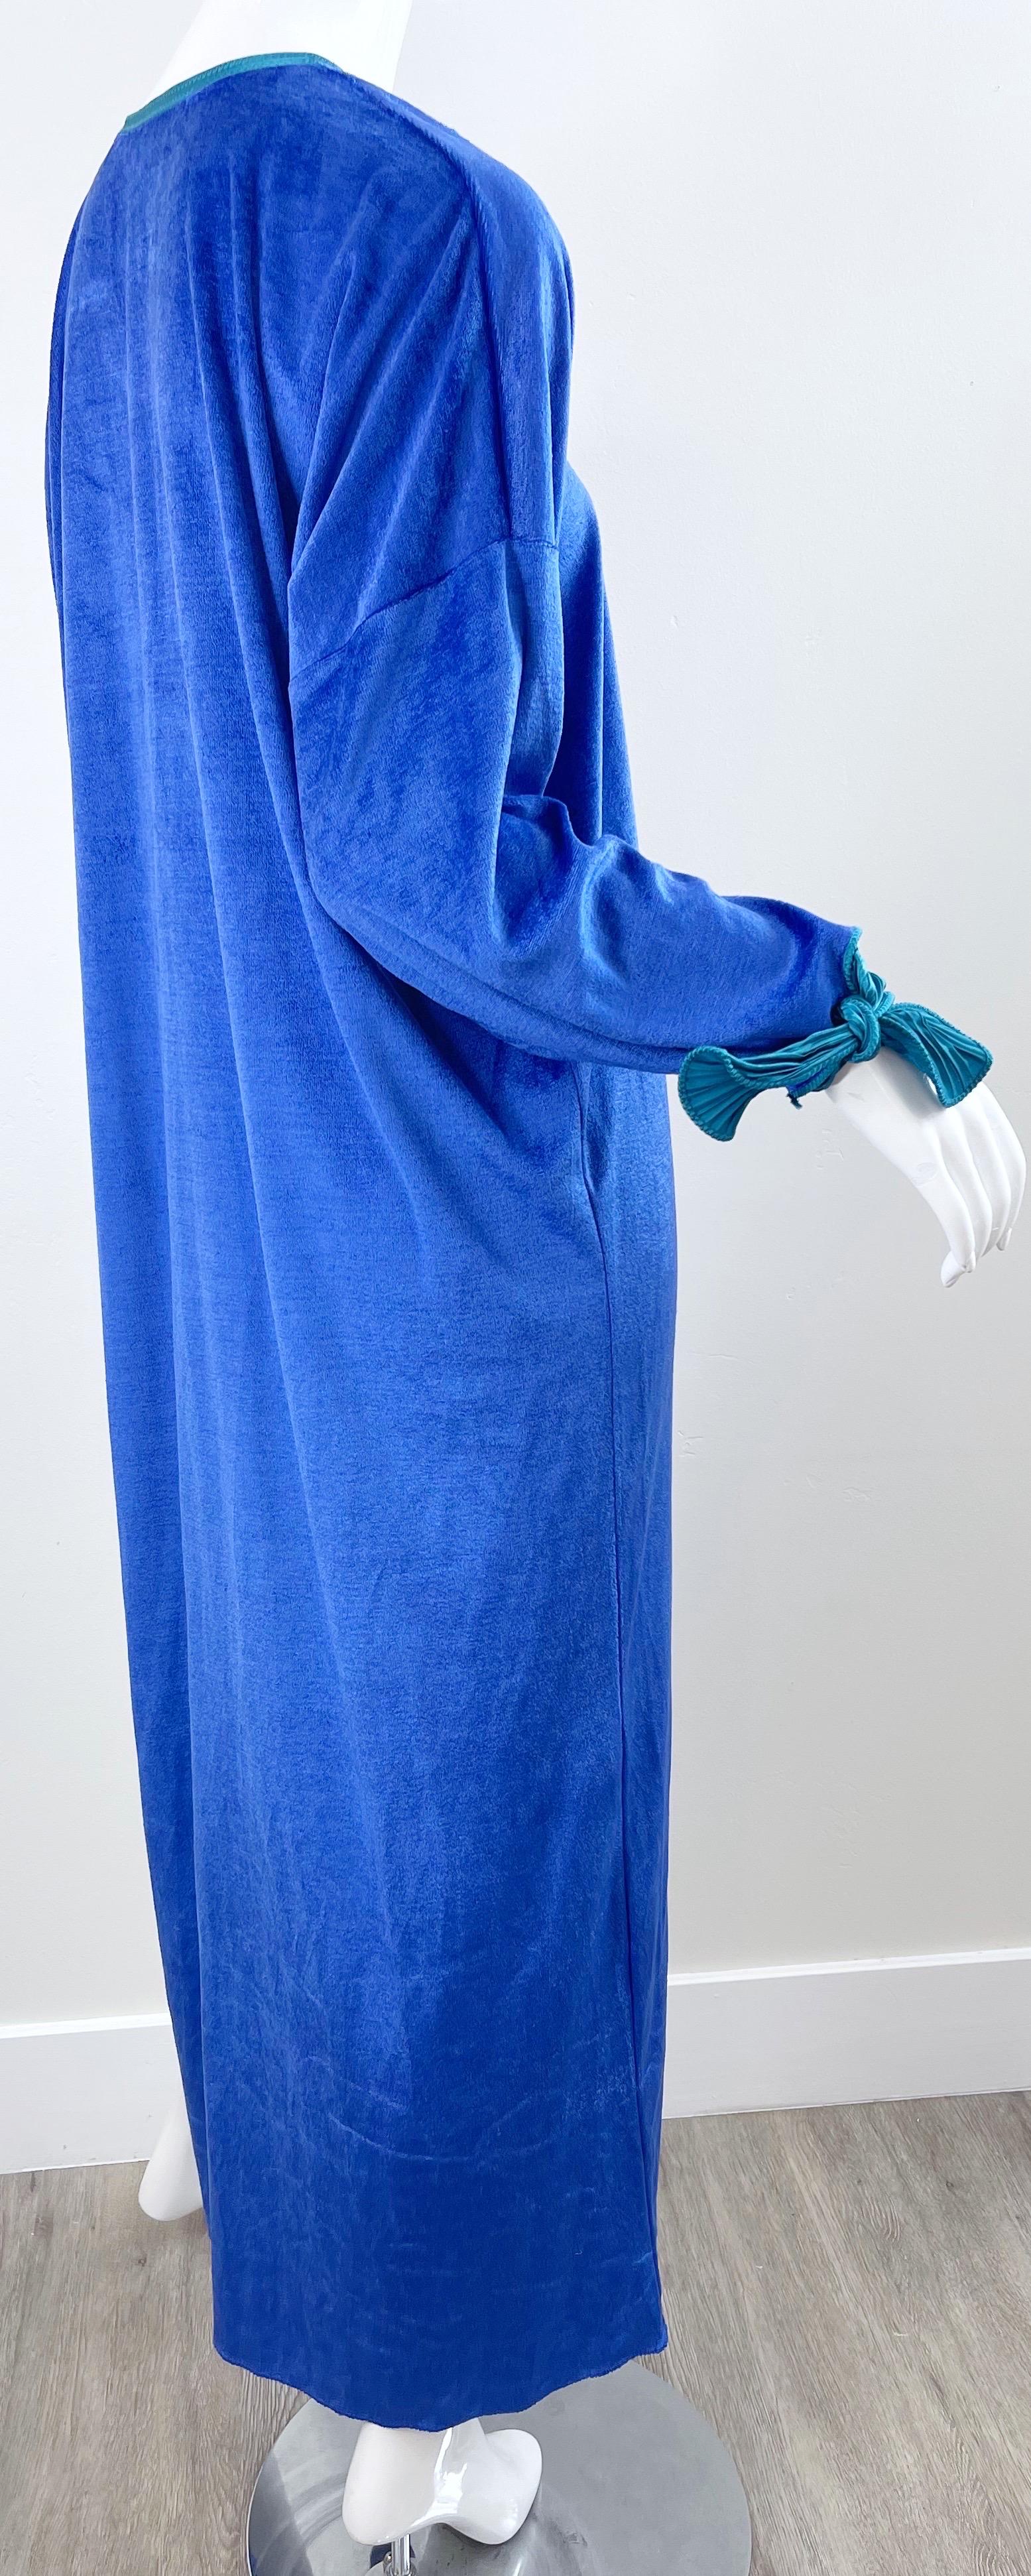 Women's 1980s Mary McFadden Royal Blue Teal Velour Vintage 80s Caftan Maxi Dress Kaftan For Sale